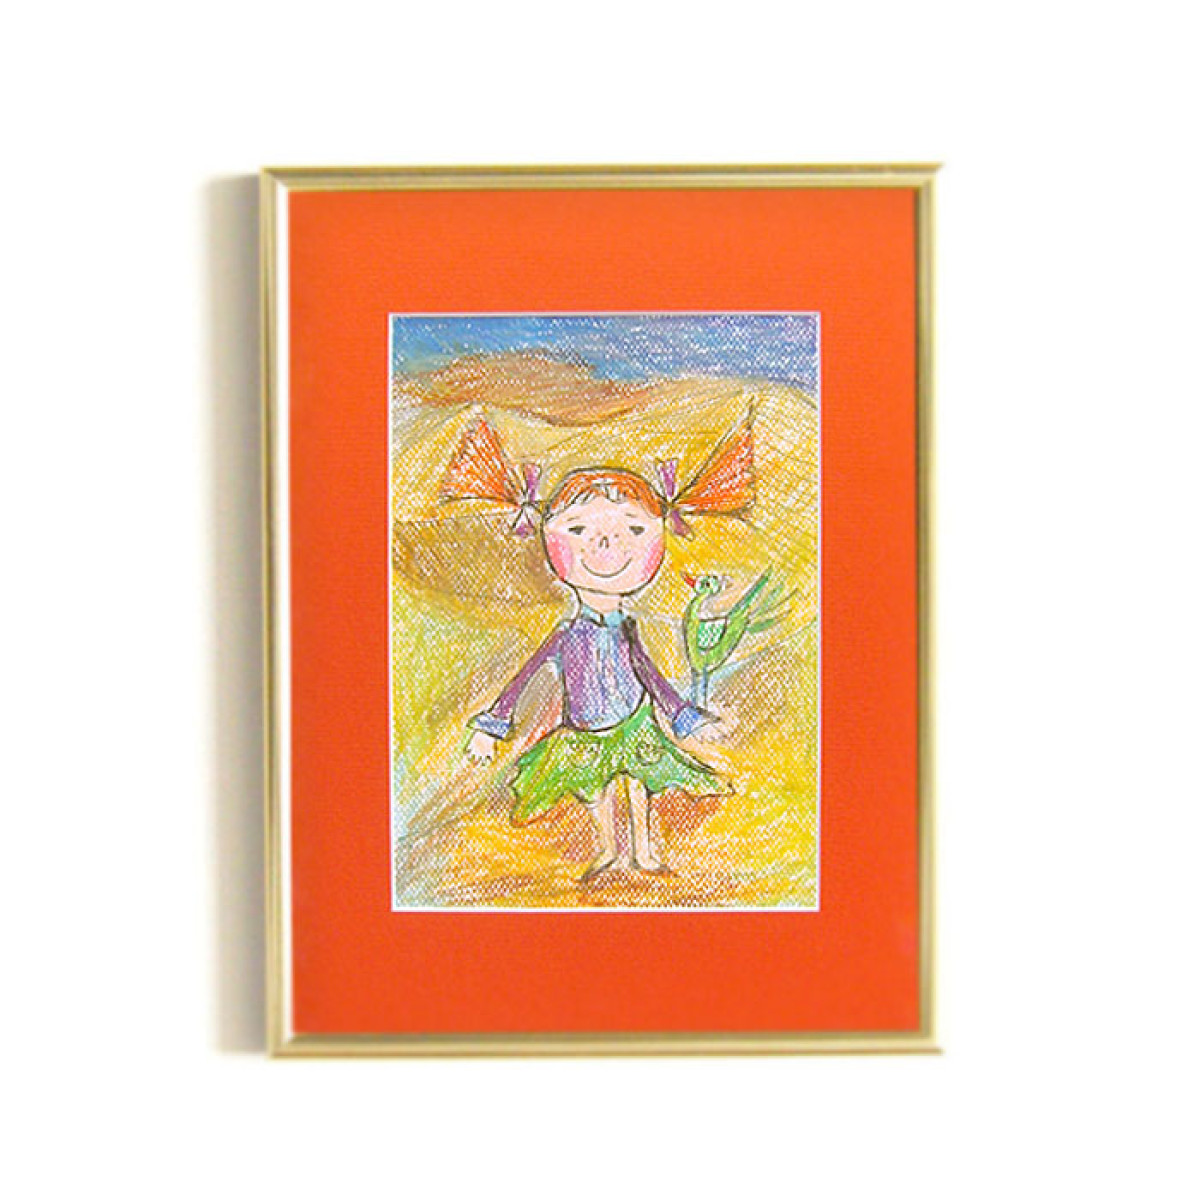 dziewczynka rysunek w ramce, oprawiony obraz dla dziewczynki,  Pippi obraz A4, dekoracja do pokoju dziewczynki, komunia prezent, chrzest prezent, dziewczynka prezent na komunię